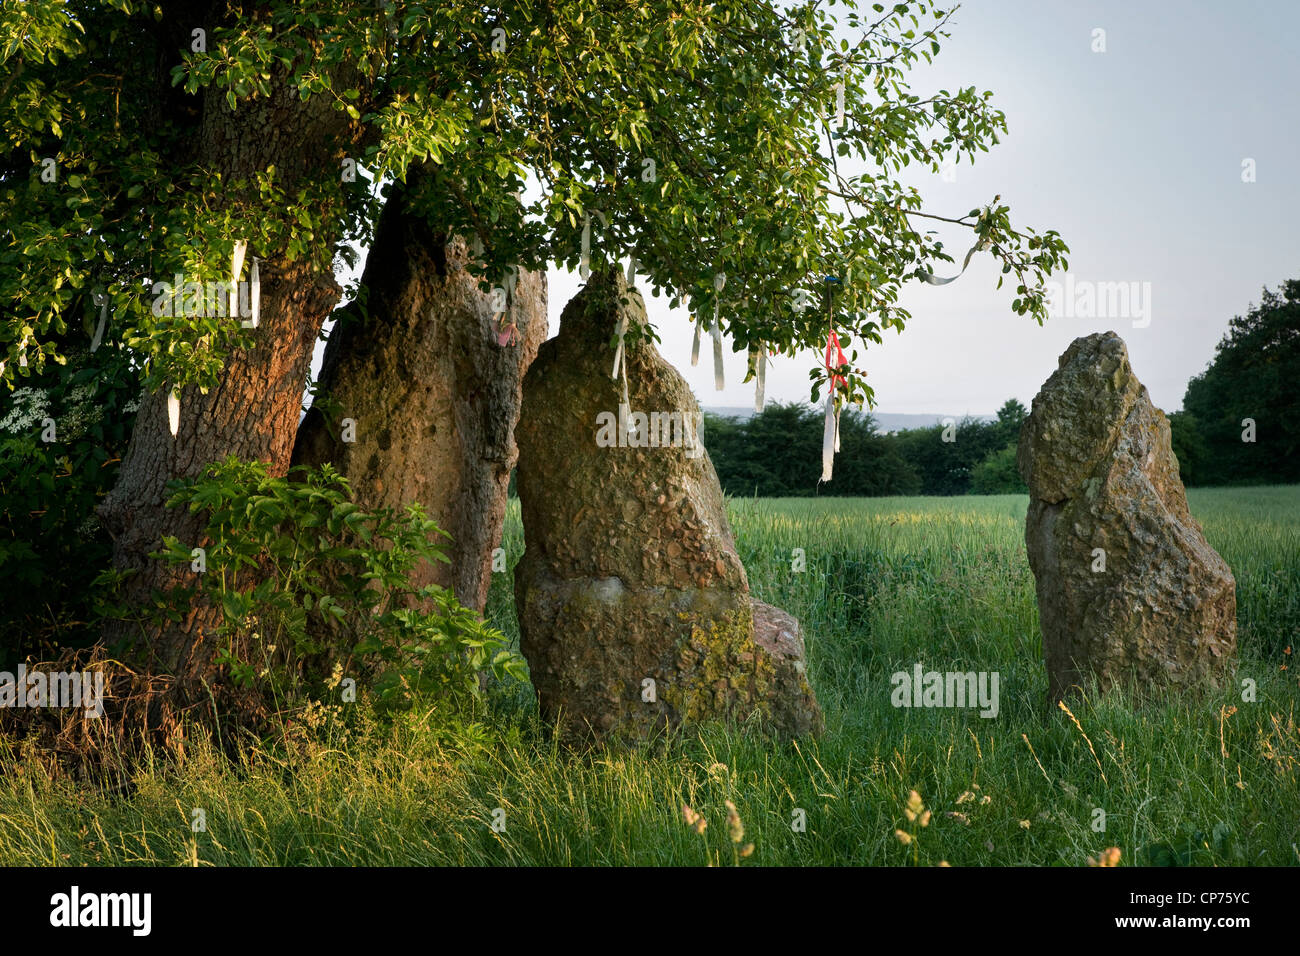 Les 3 pierres / menhirs d'Oppagne près de Wéris, Ardennes Belges, Luxembourg, Belgique Banque D'Images